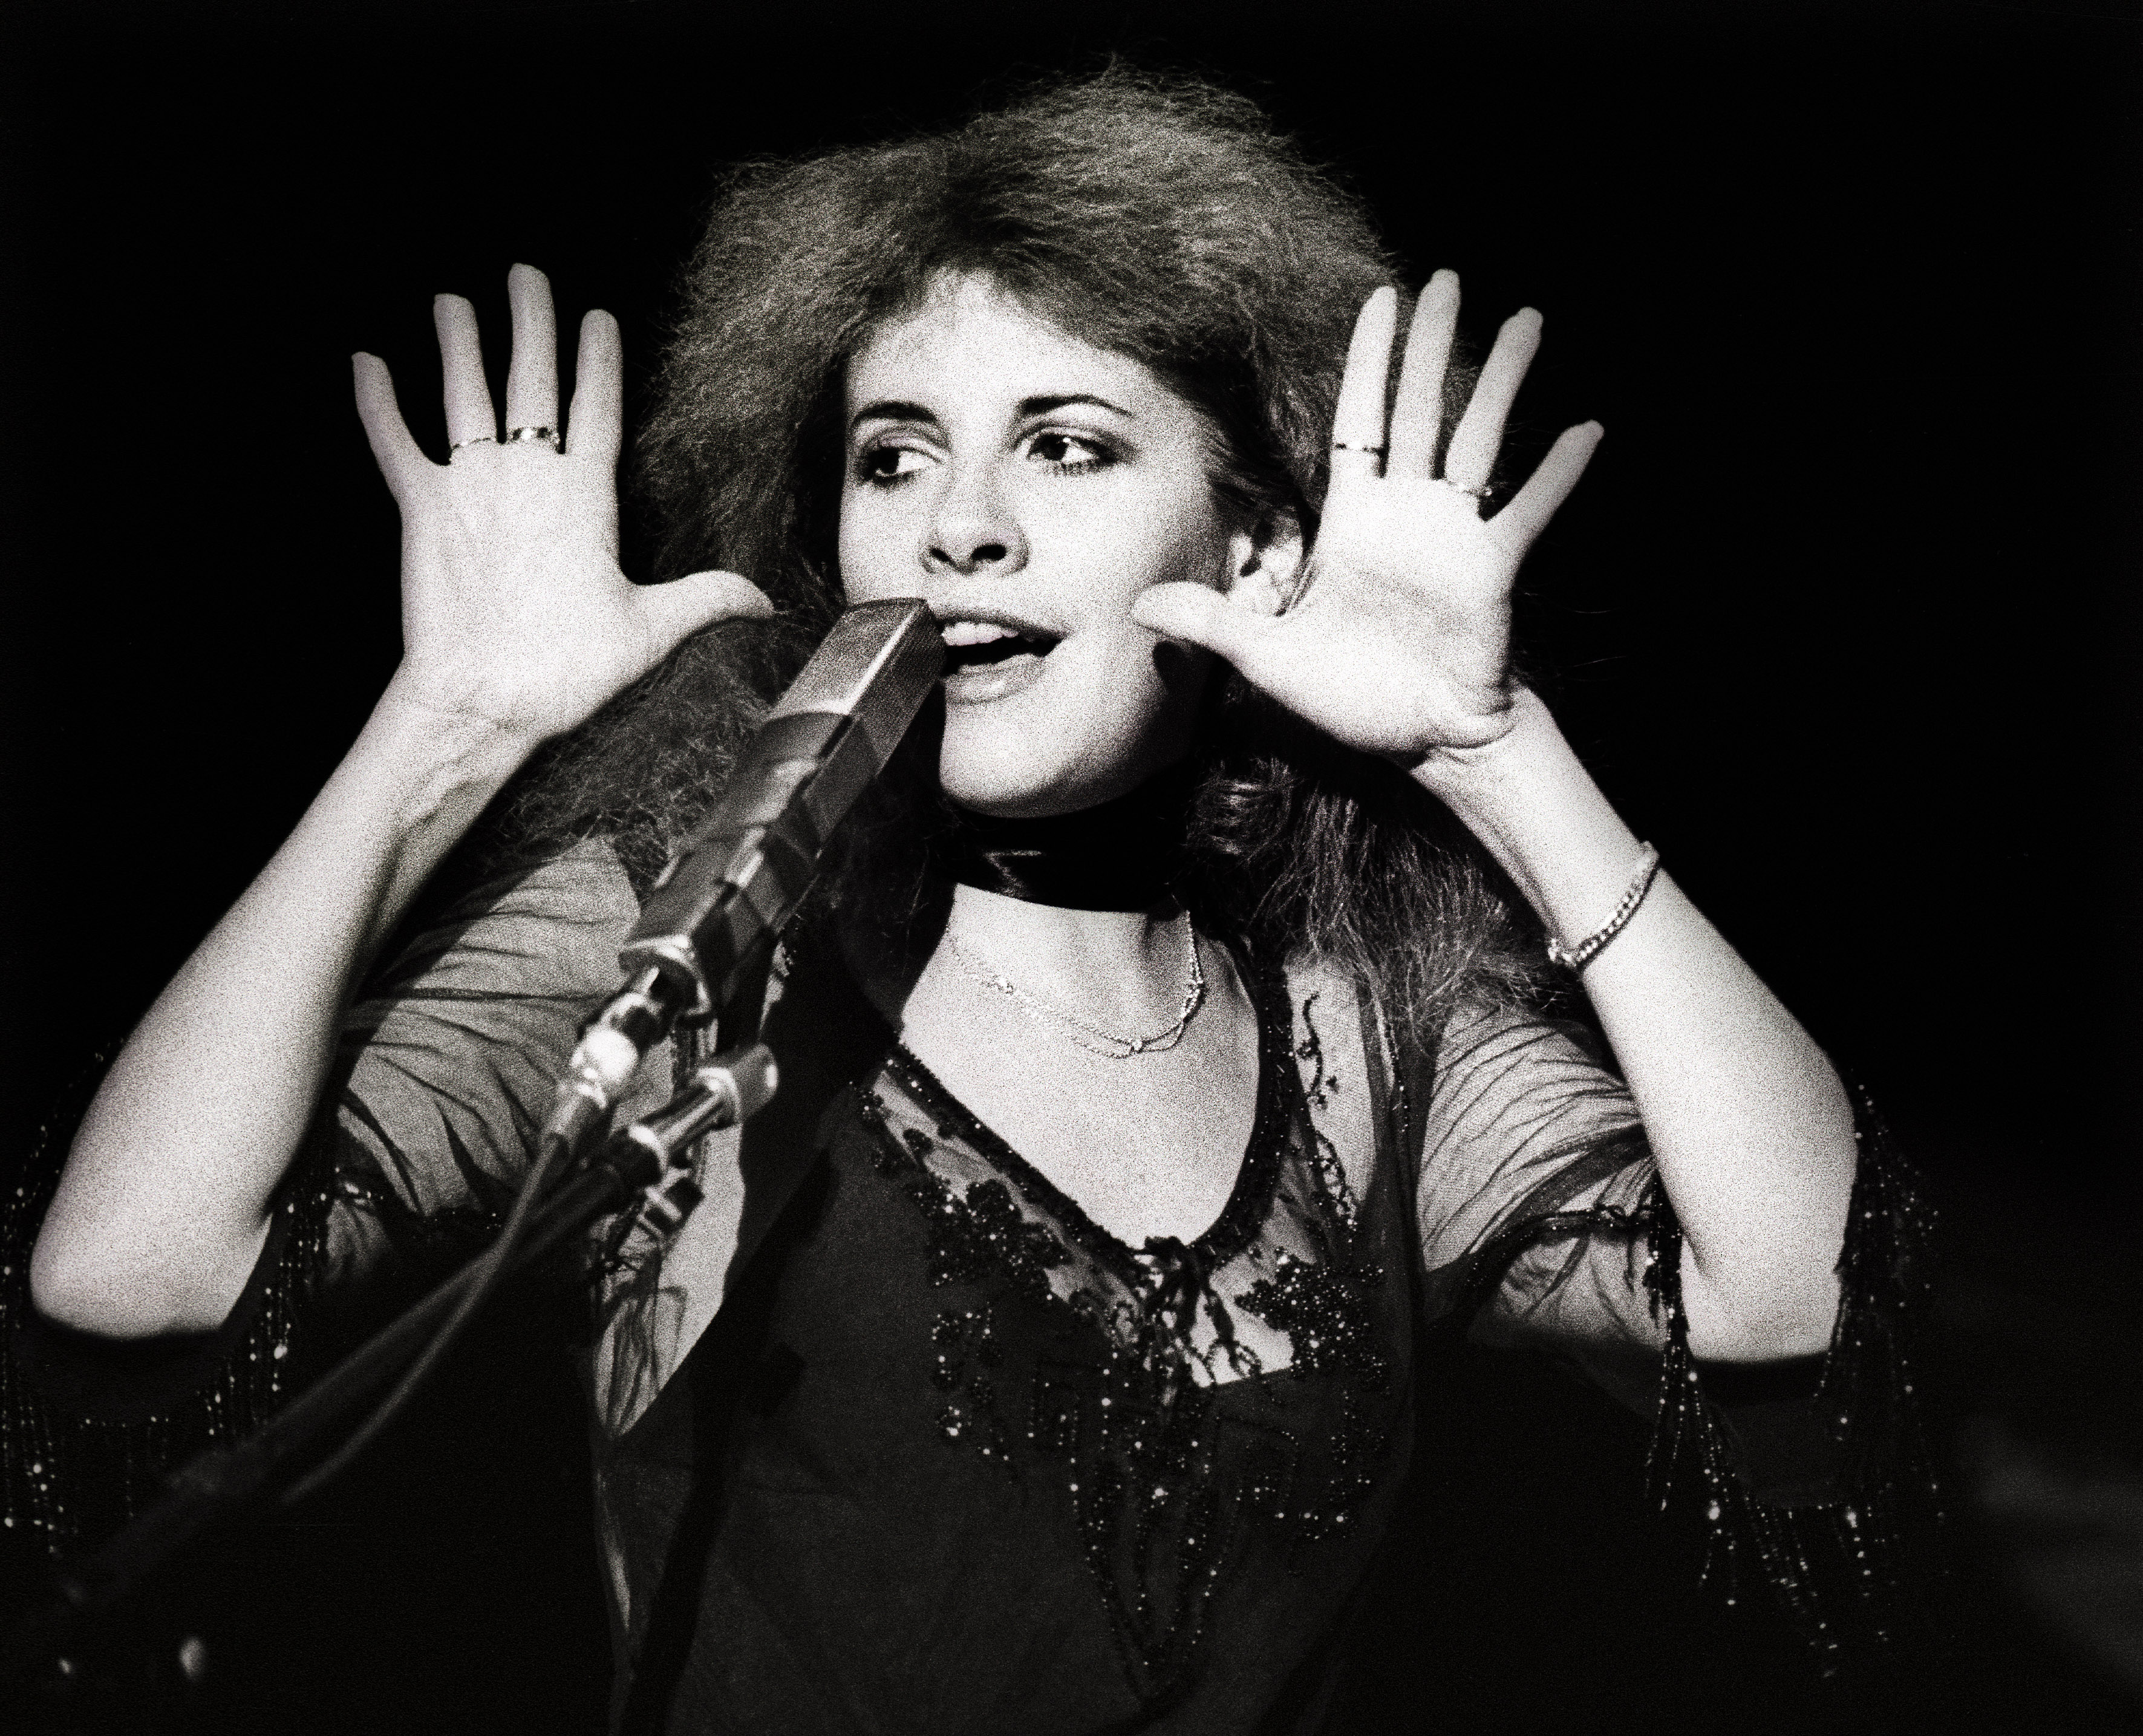 Stevie Revealed Celebrity Her Completely Starstruck: 'He Just Oozed Handsomeness'